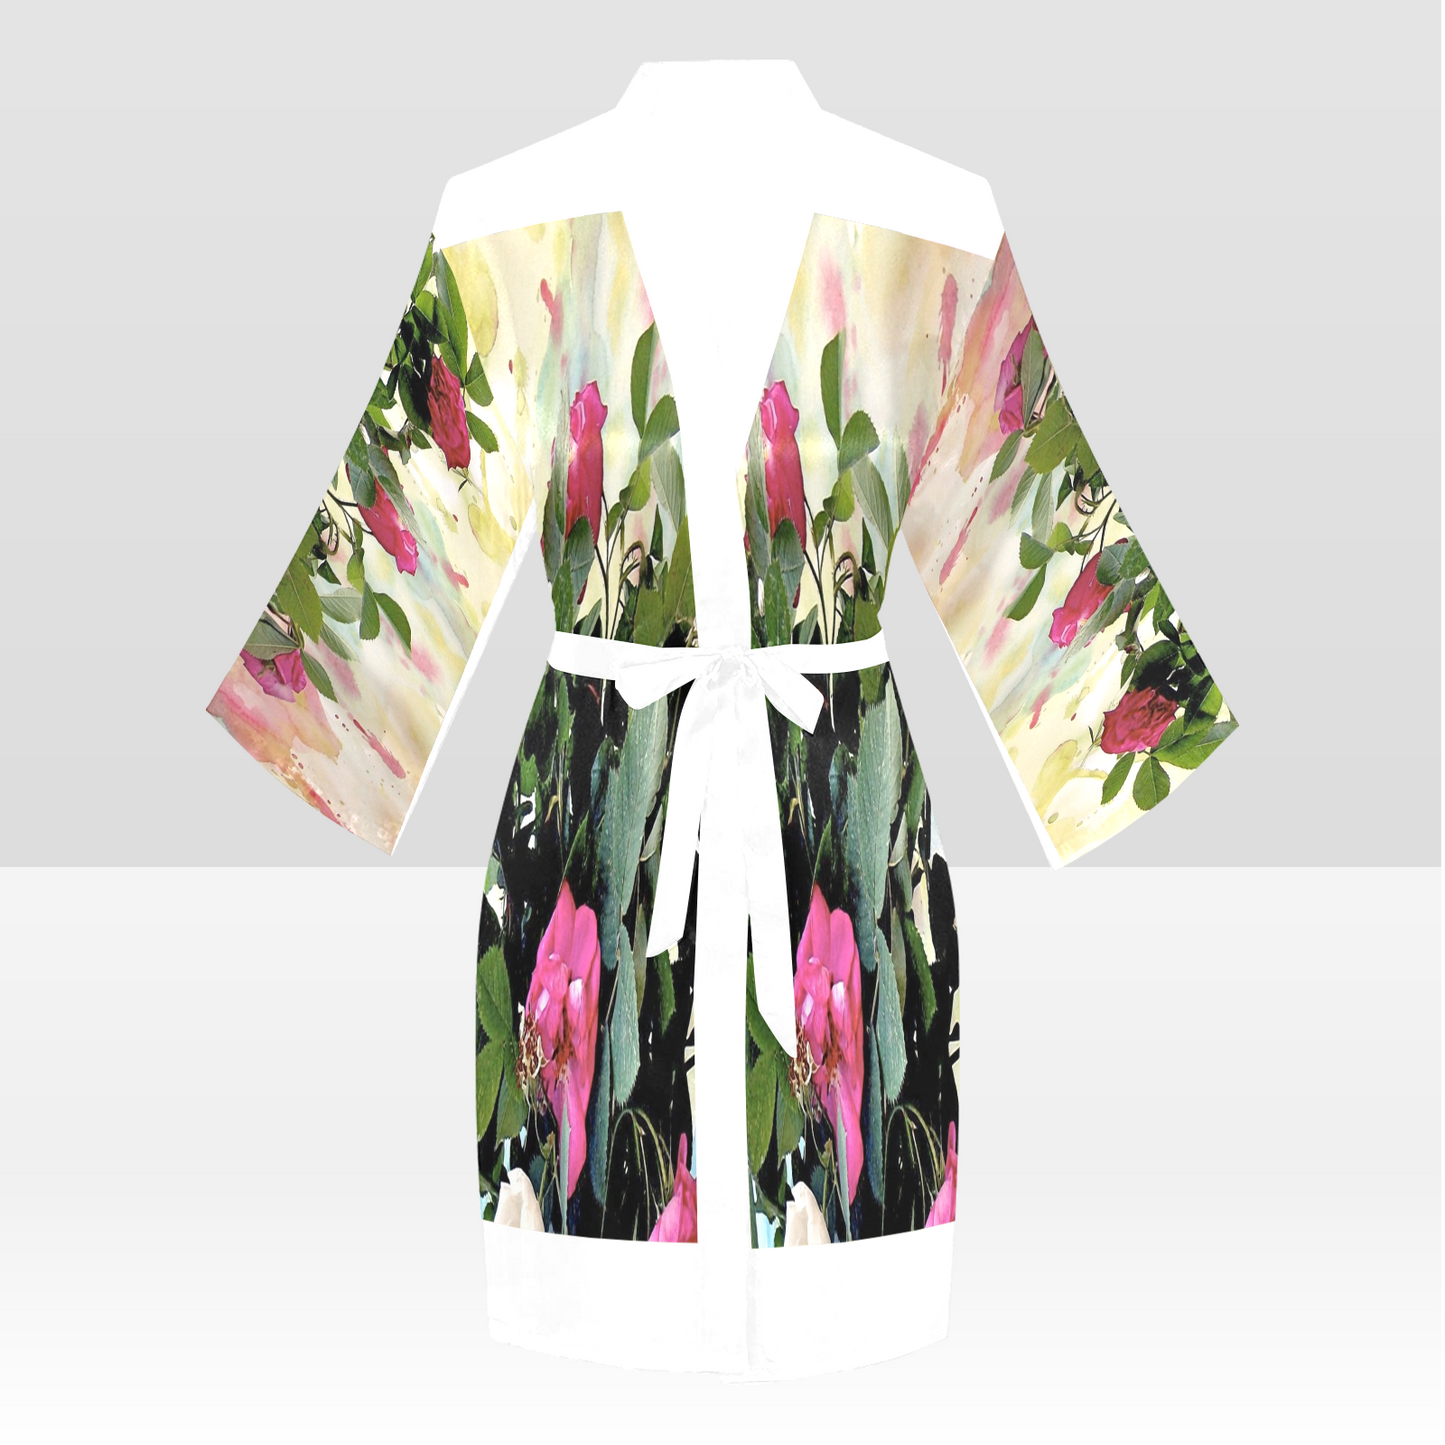 Vintage Floral Kimono Robe, Black or White Trim, Sizes XS to 2XL, Design 22